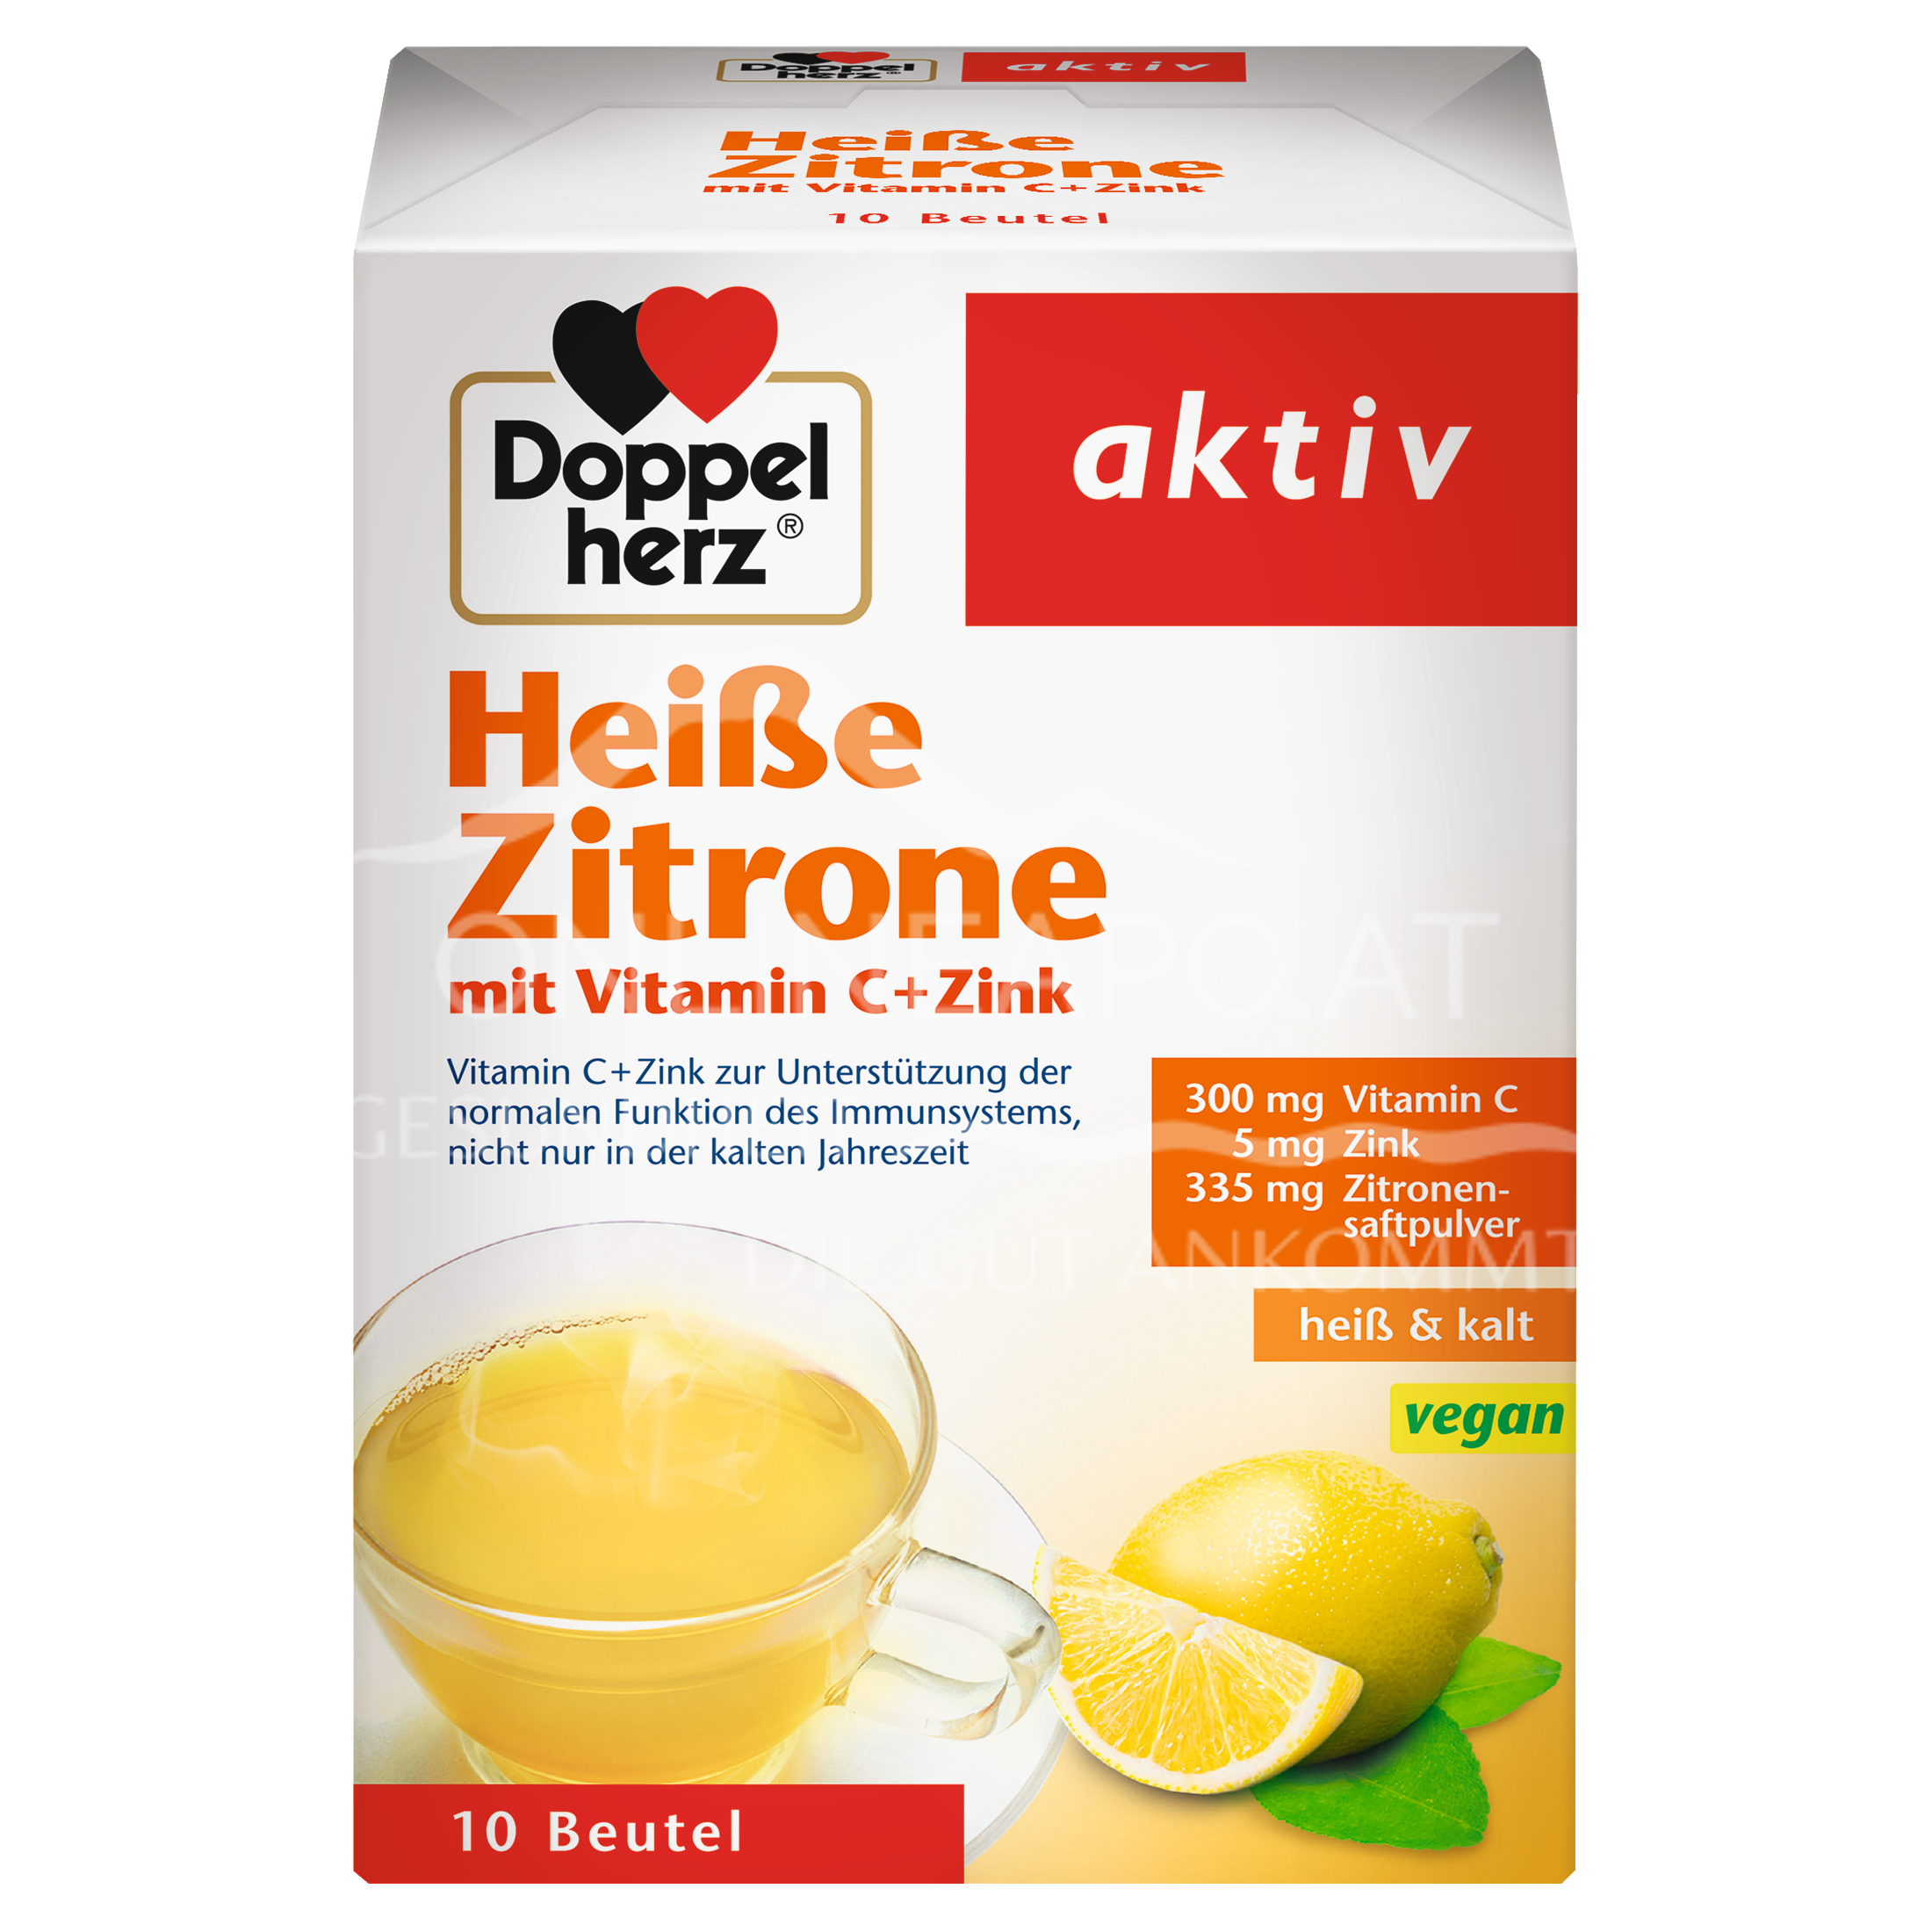 Doppelherz aktiv Heiße Zitrone mit Vitamin C + Zink Sachets